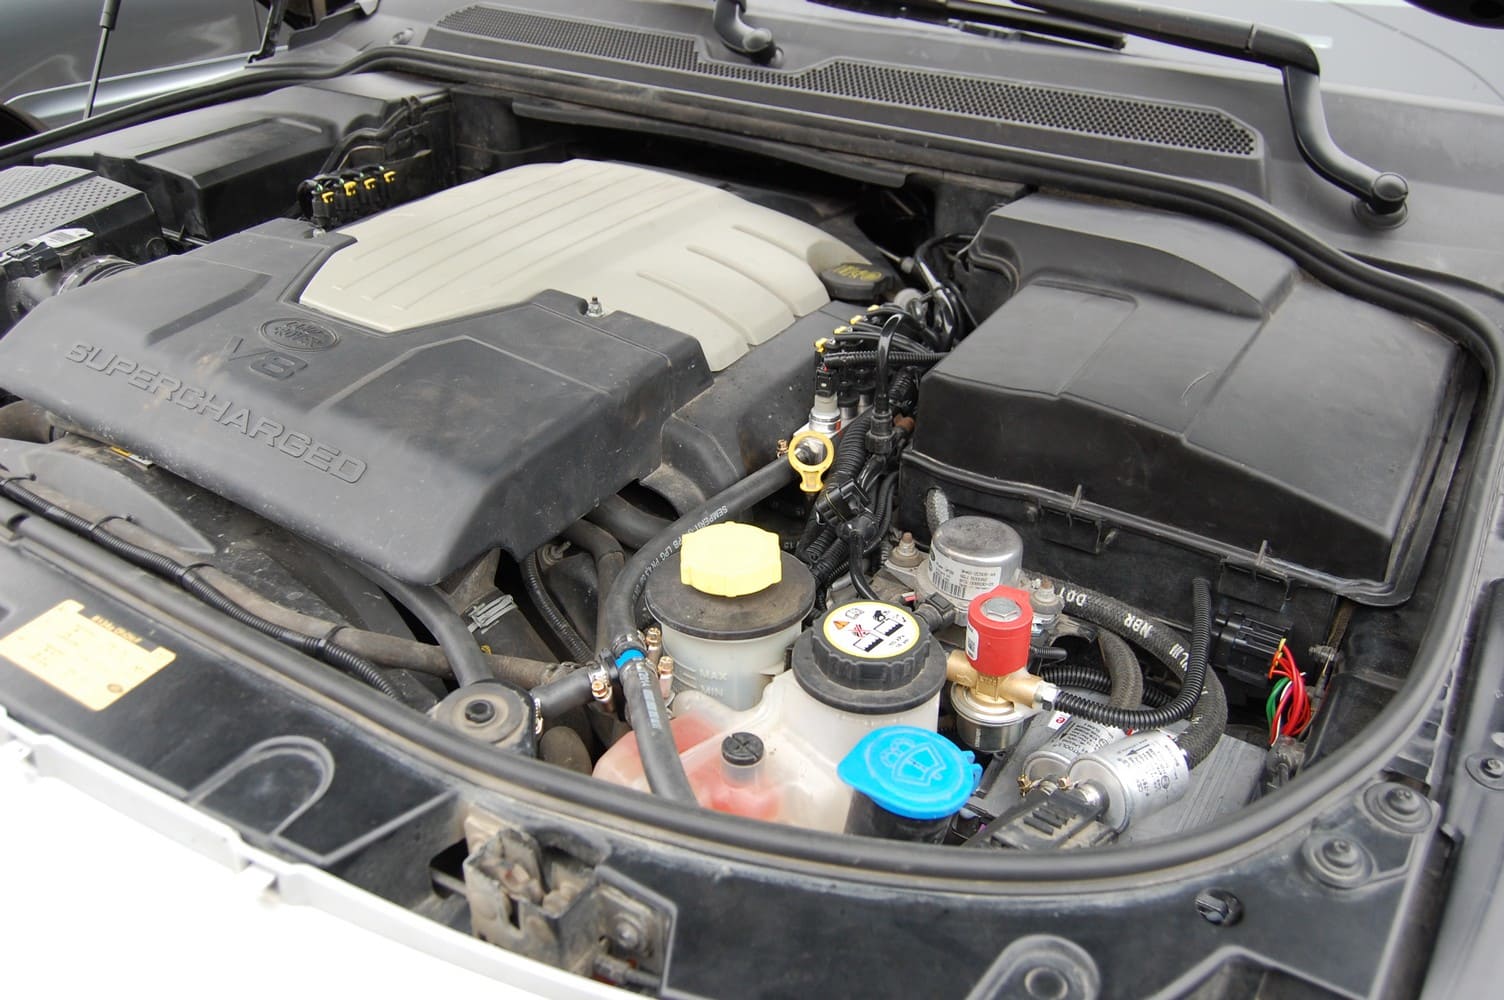 Range Rover Sport (2005-2009) 4.4 л.